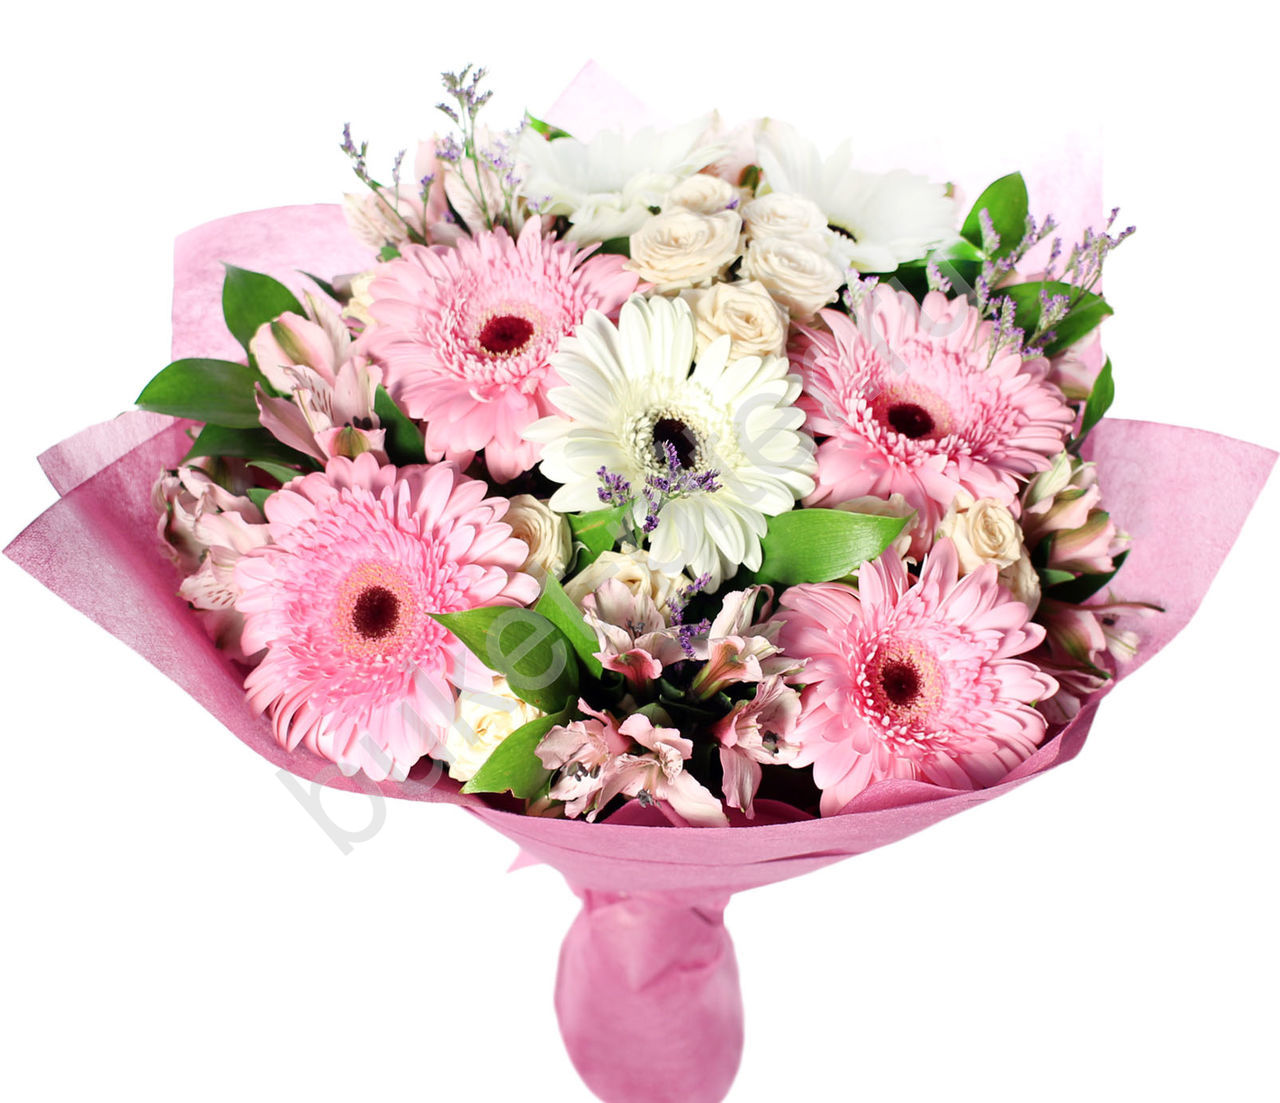  Antalya Çiçek Gönder Buket Pembe &  Beyaz Celbera